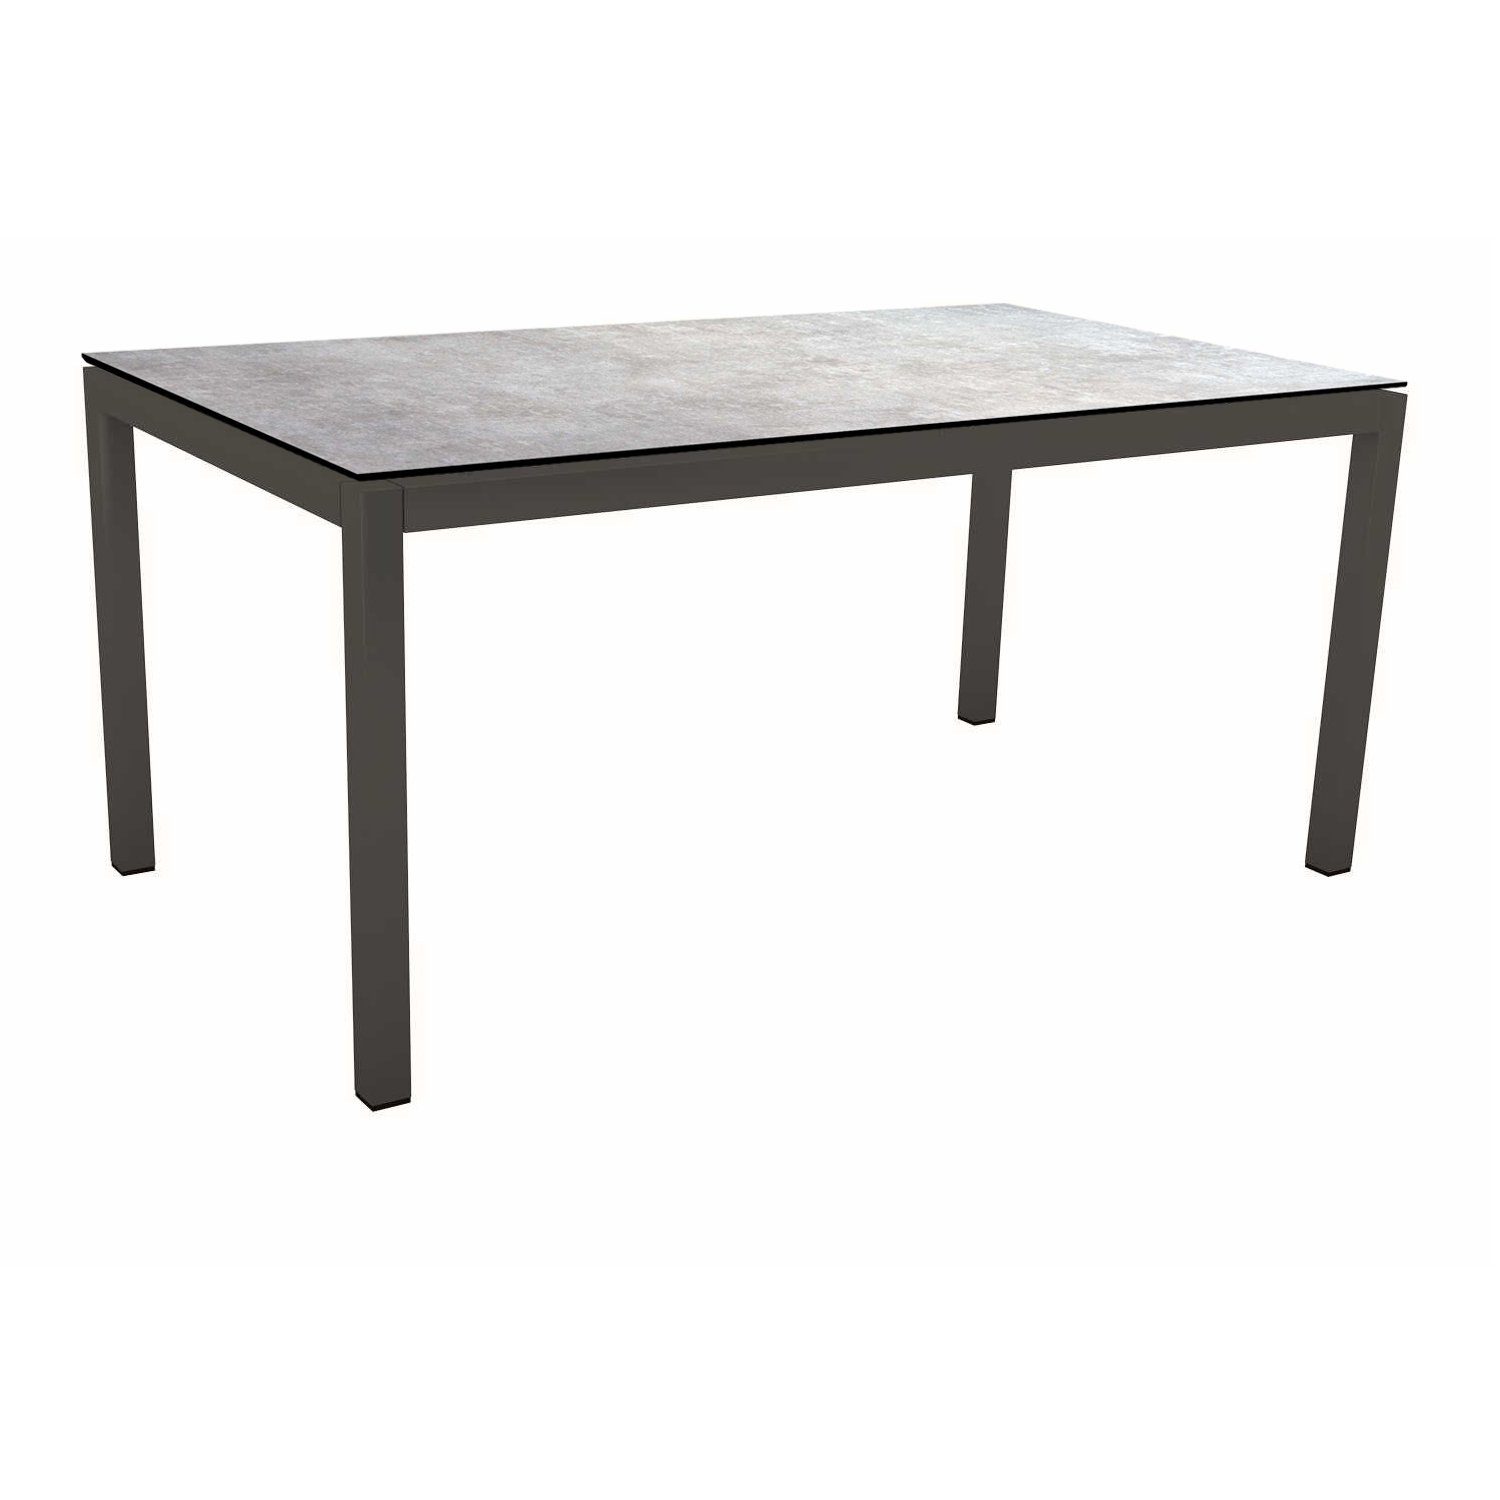 Stern Tischsystem Gartentisch, Gestell Aluminium anthrazit, Tischplatte HPL Metallic grau, Maße: 160x90 cm